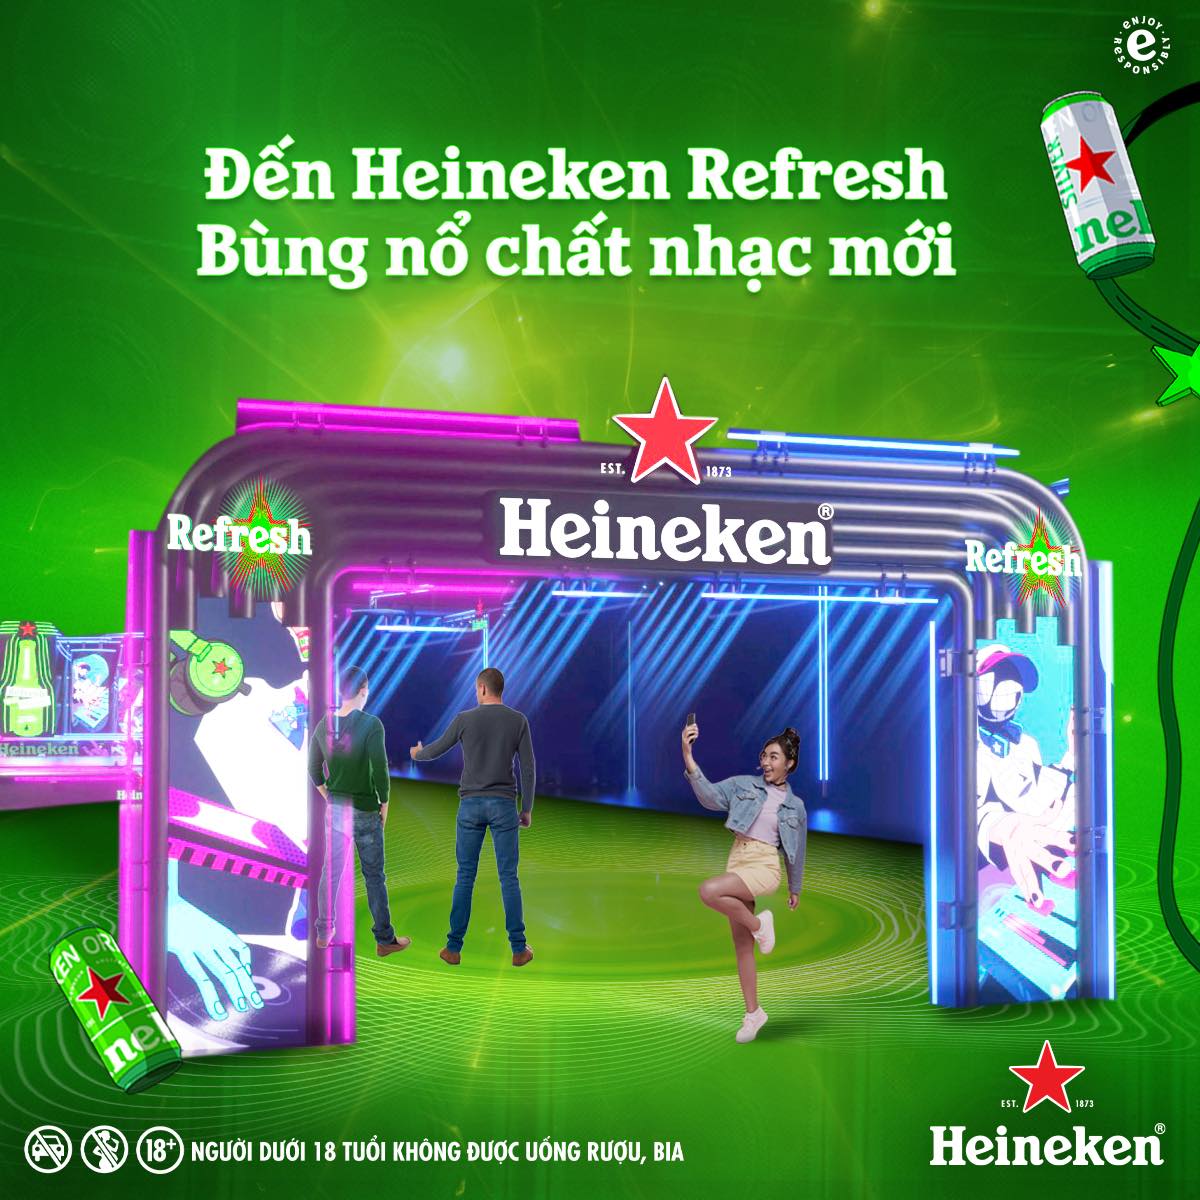 Đi “trẩy hội” Heineken Refresh, bạn đã nằm lòng 3 điểm “siêu bùng nổ” này chưa? - ảnh 4